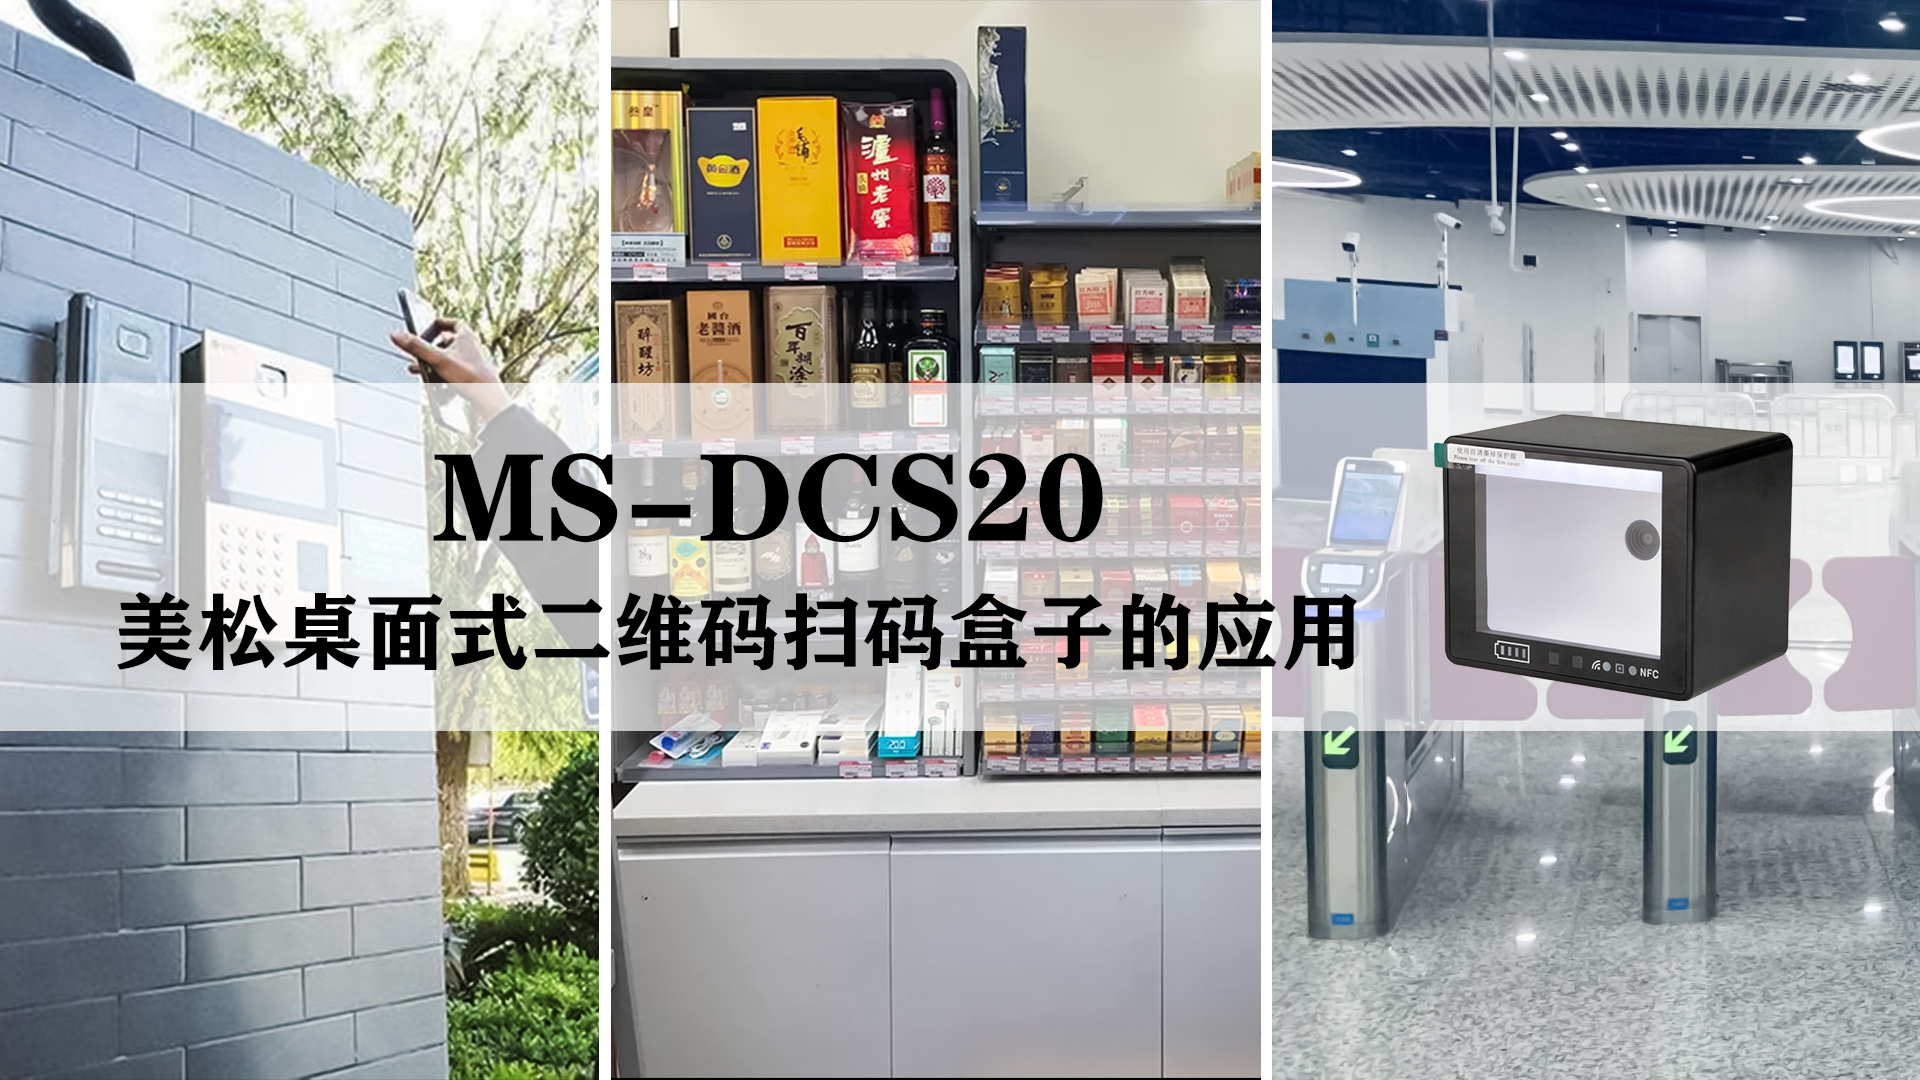 美松桌面式二维码扫码盒子MS-DCS20的应用